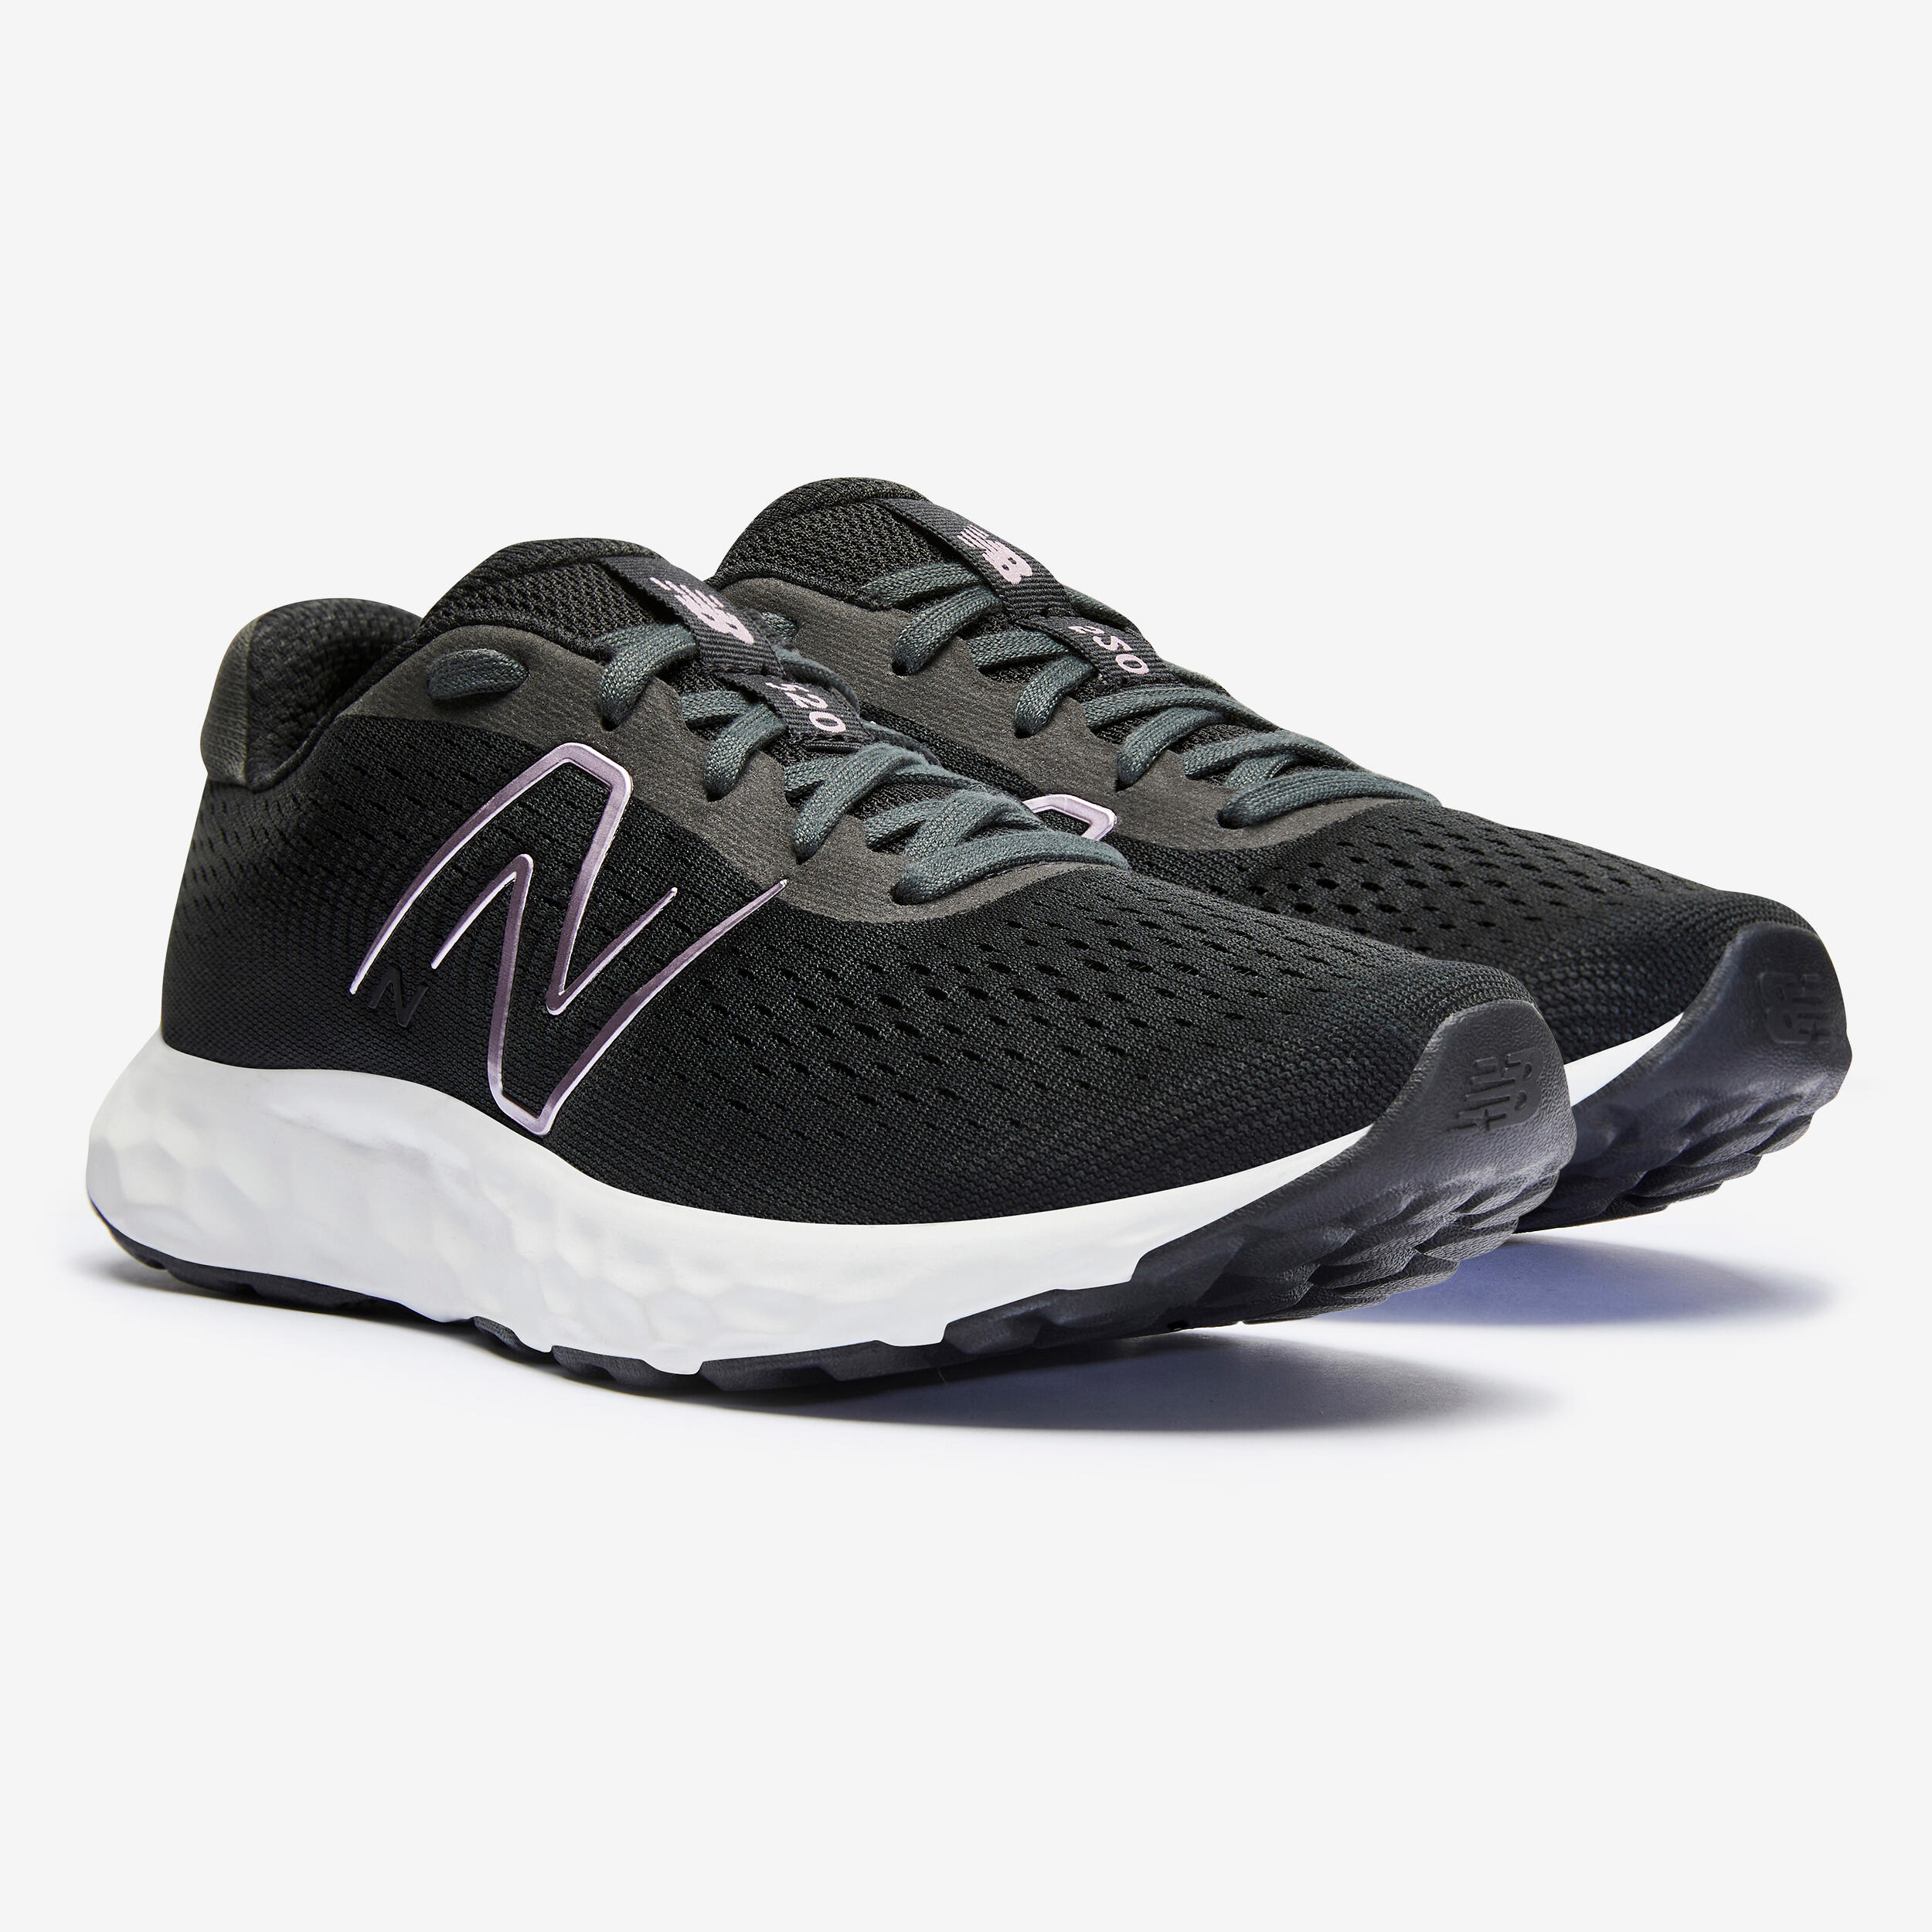 NB W520 v8 BLACK women's running shoes 7/8